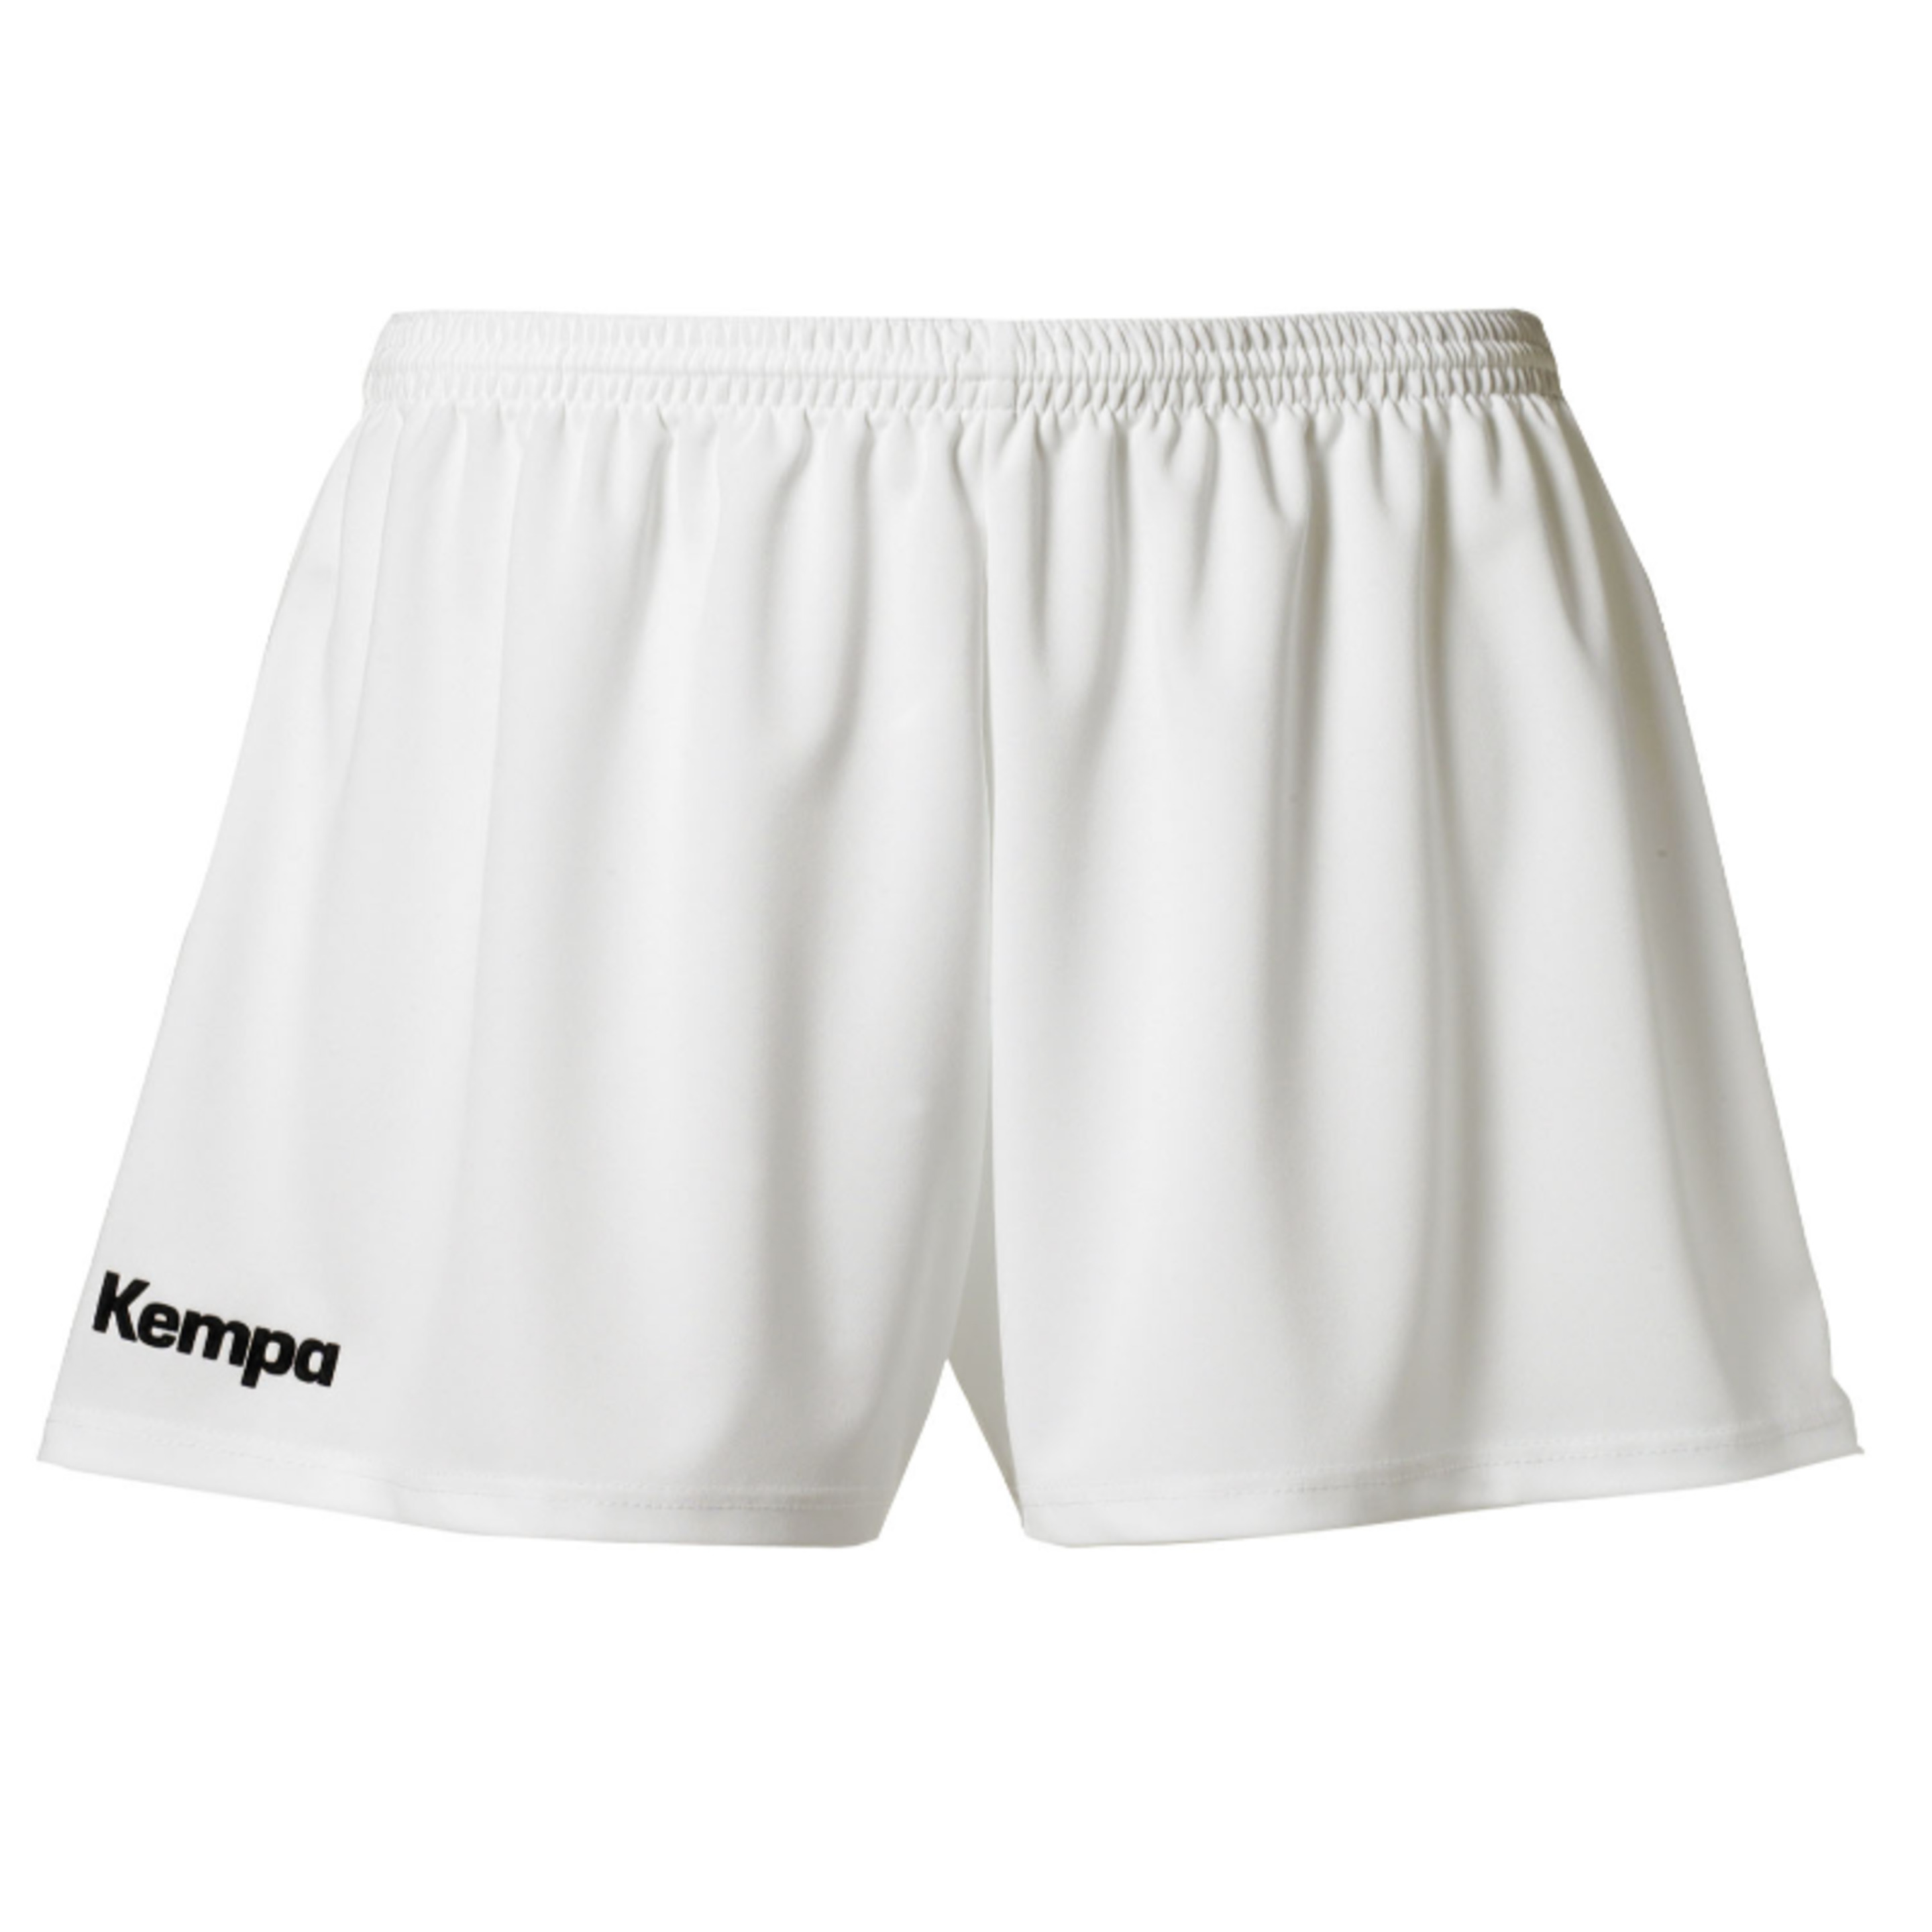 Classic Shorts De Mujer Blanco Kempa